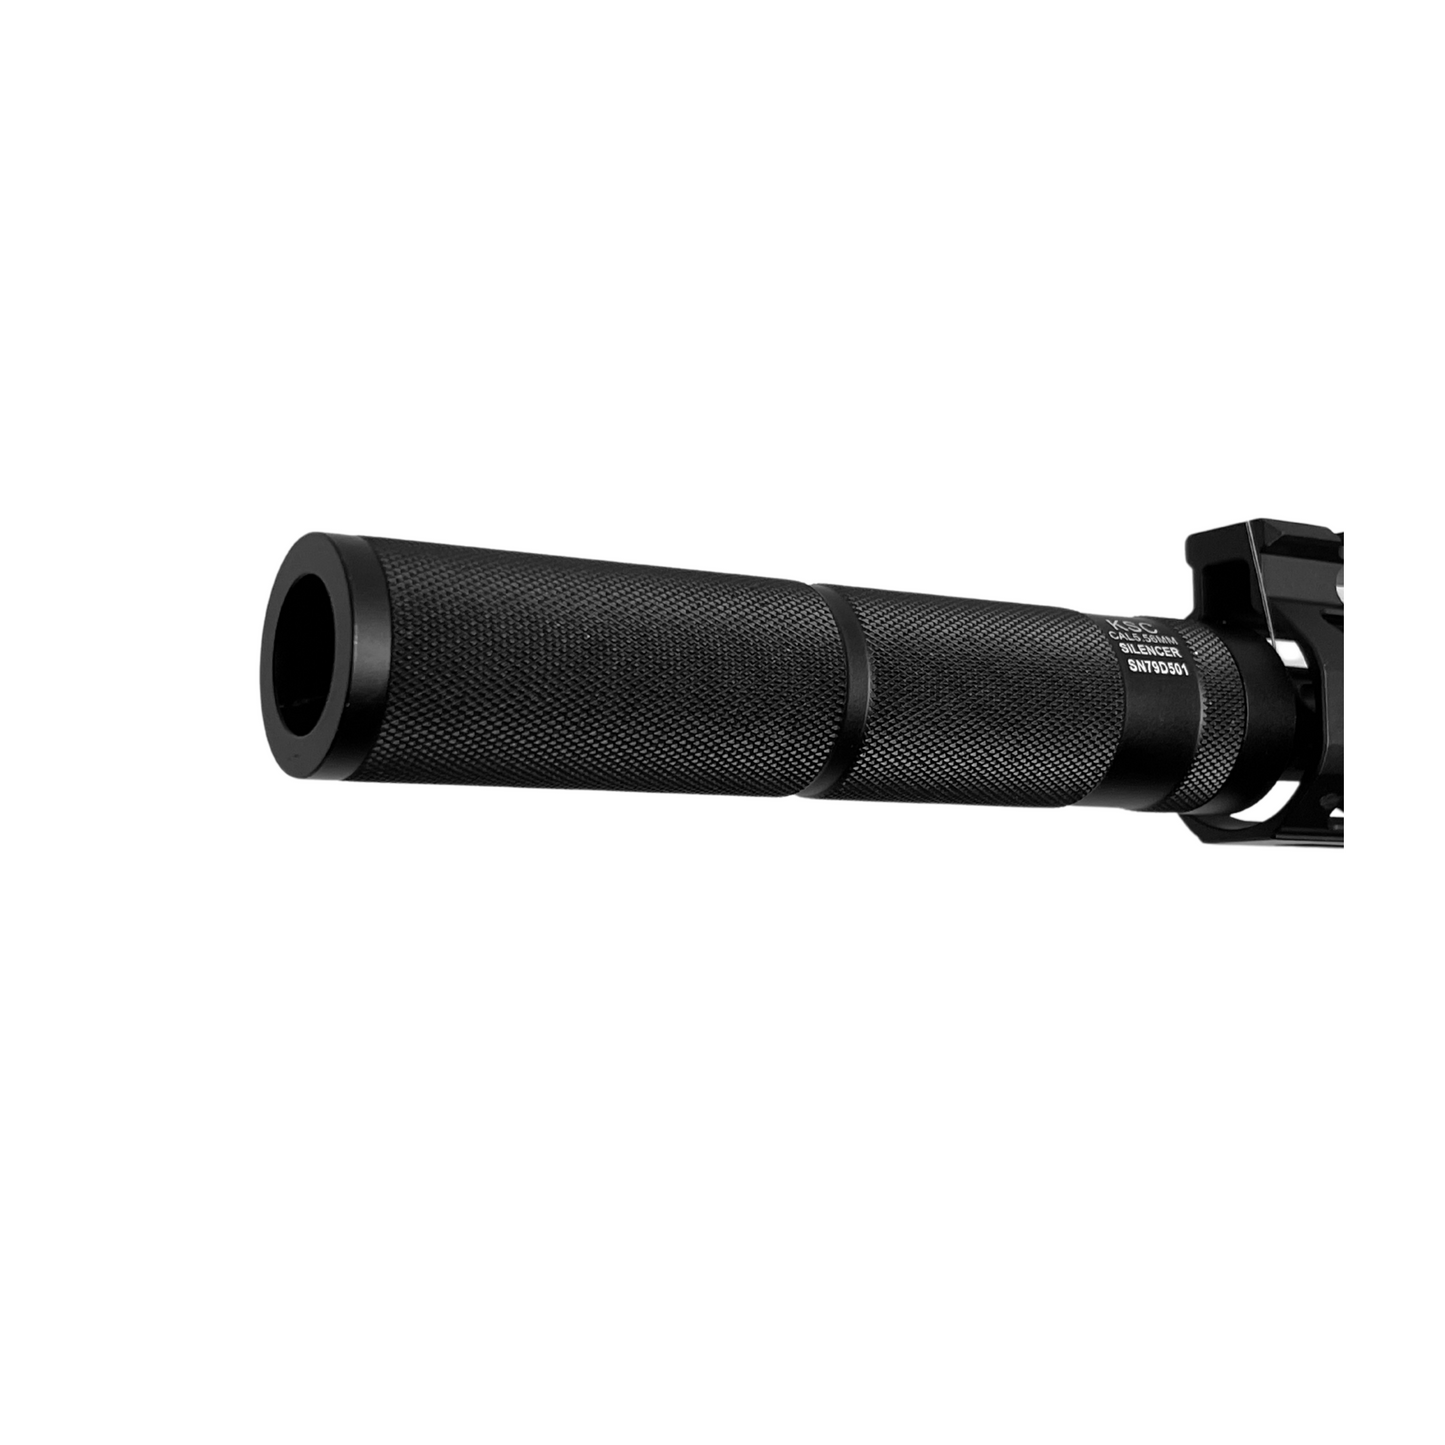 Custom "Black Adder" Tactical M4 (Metal) Gel Blaster